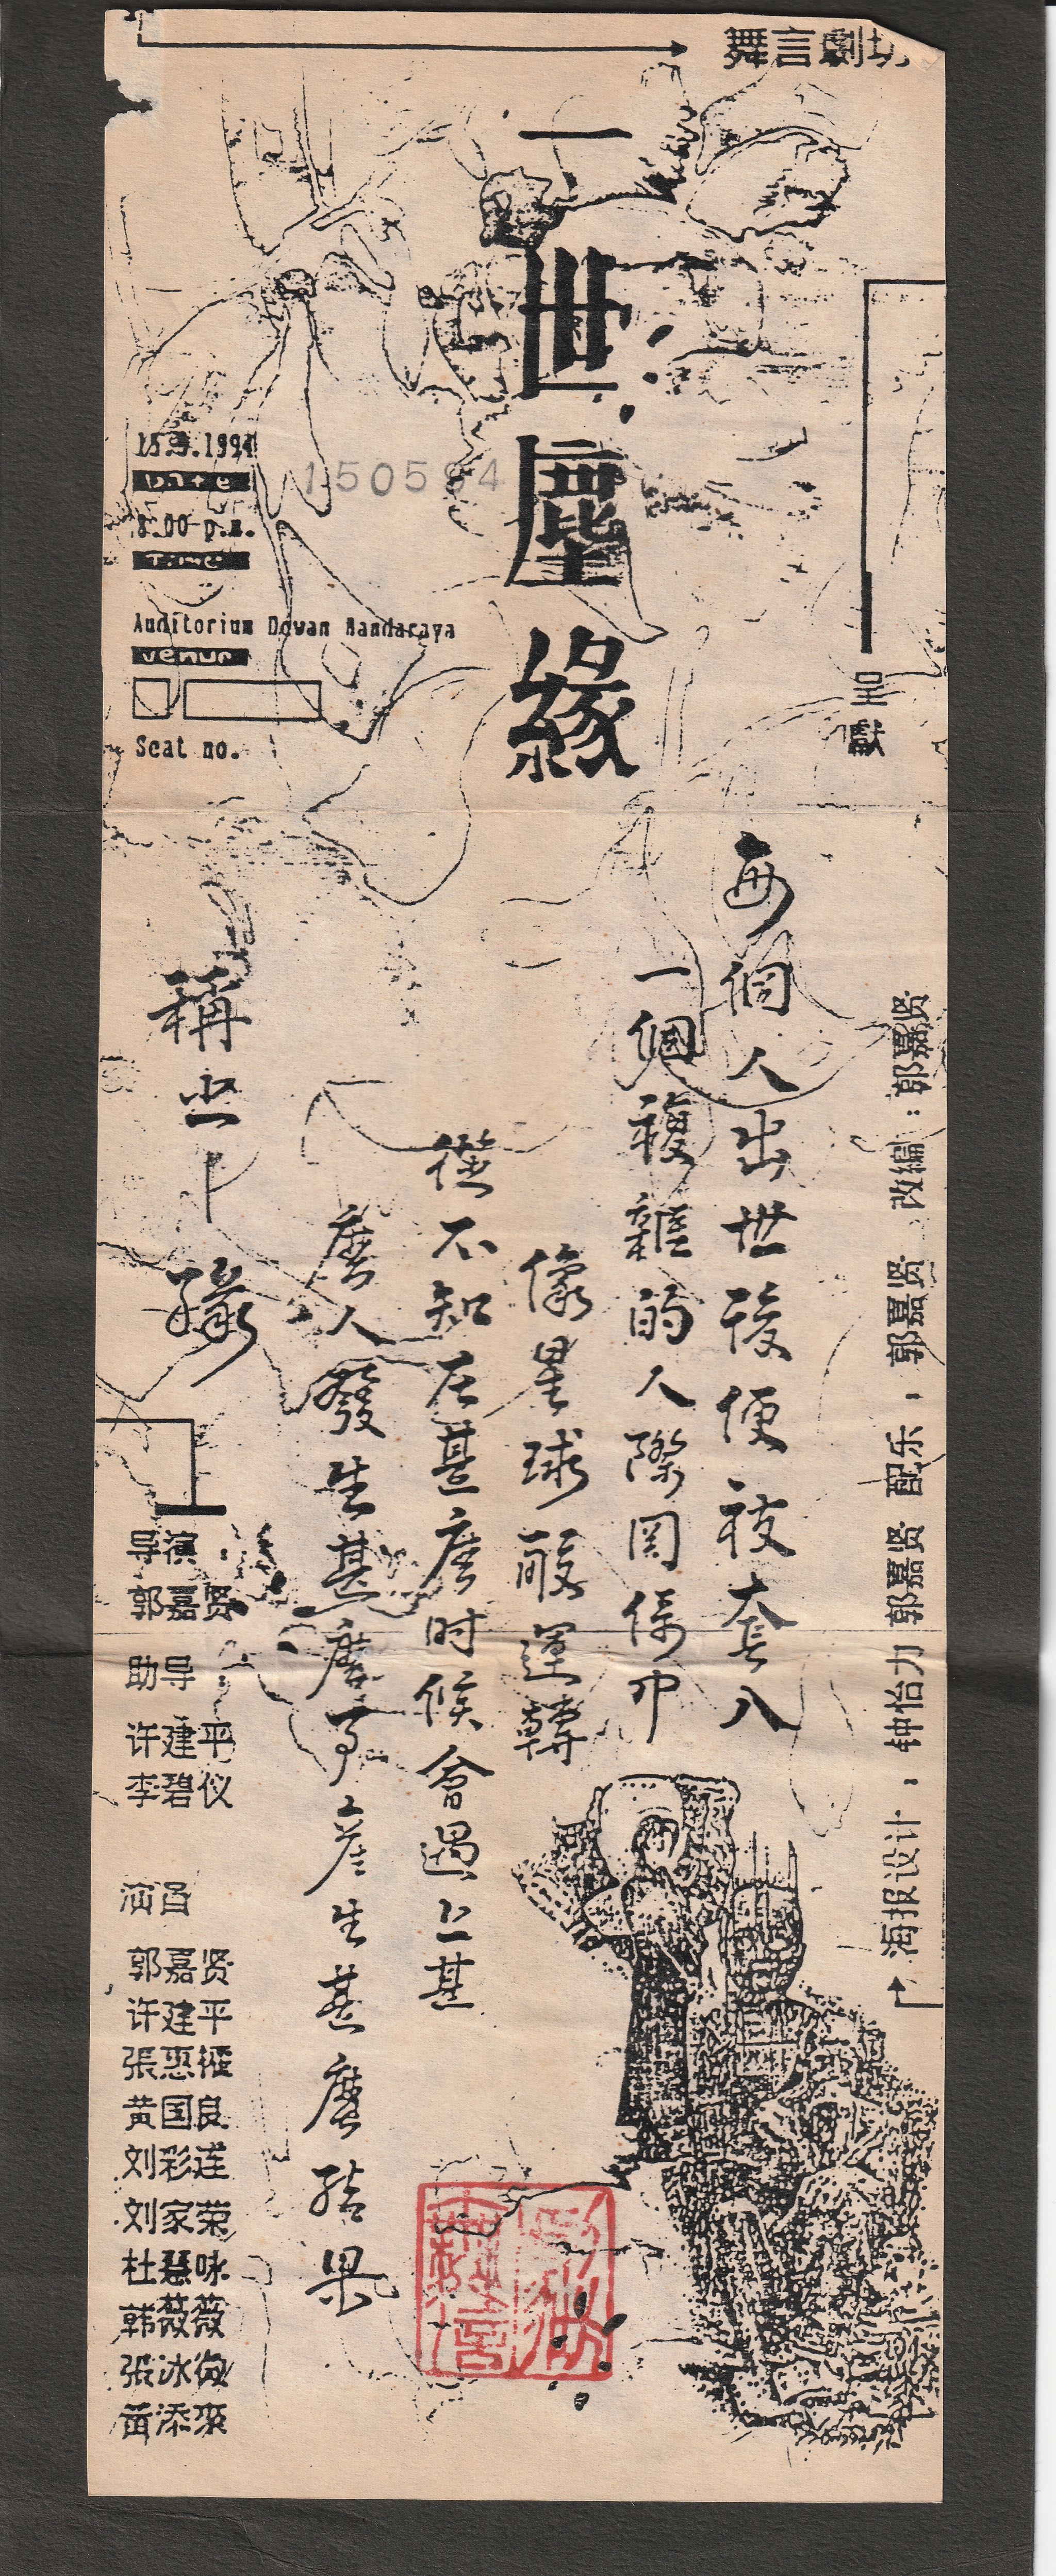 1994 Yi Shi Chen Yuan Flyer